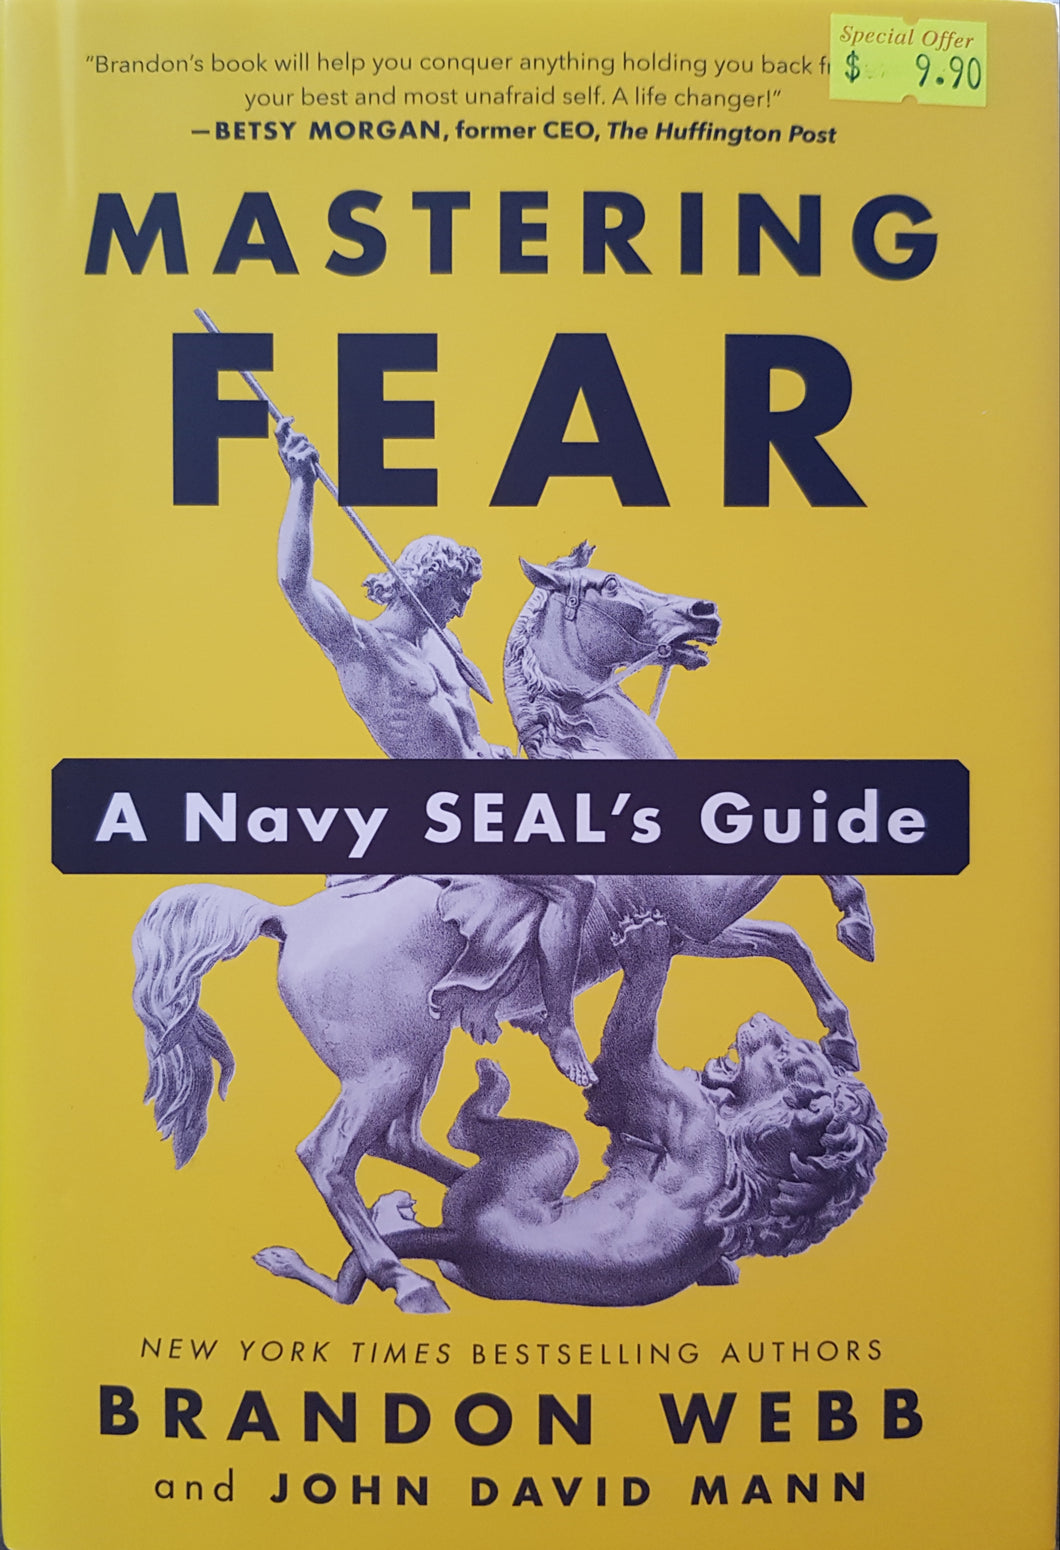 Mastering Fear: A Navy Seal's Guide - Brandon Webb & John David Mann